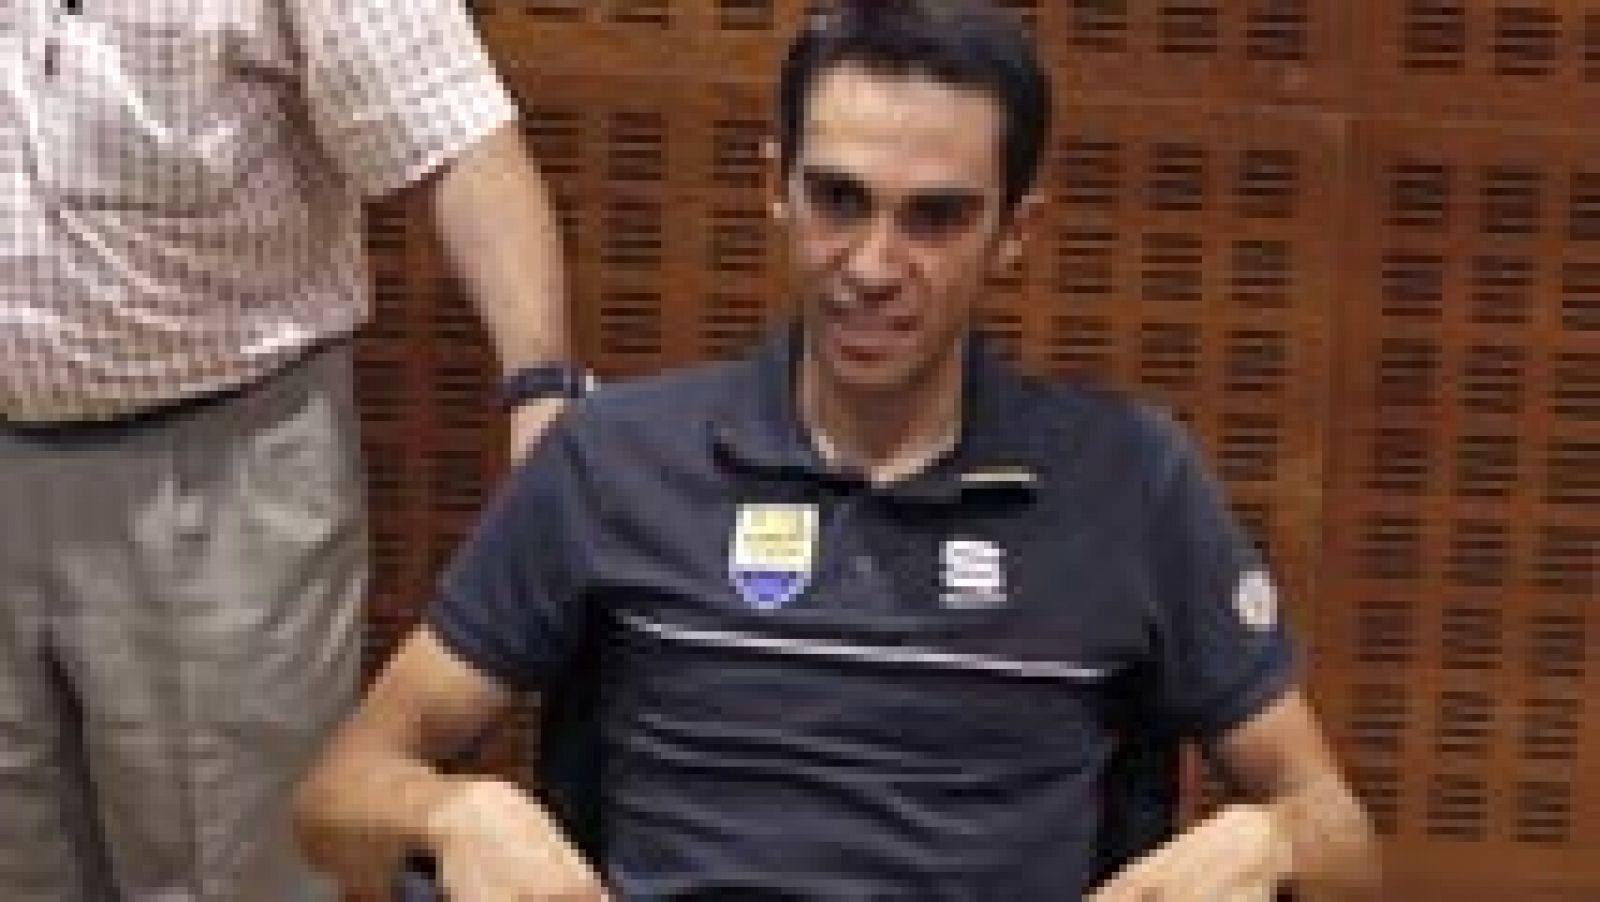 Alberto Contador, convaleciente de una fractura en la tibia derecha que le obligó a abandonar el Tour de Francia el pasado día 14 tras una caída en la décima etapa, ha confirmado este miércoles en su cuenta de twitter que no participará en la próxima Vuelta a España.